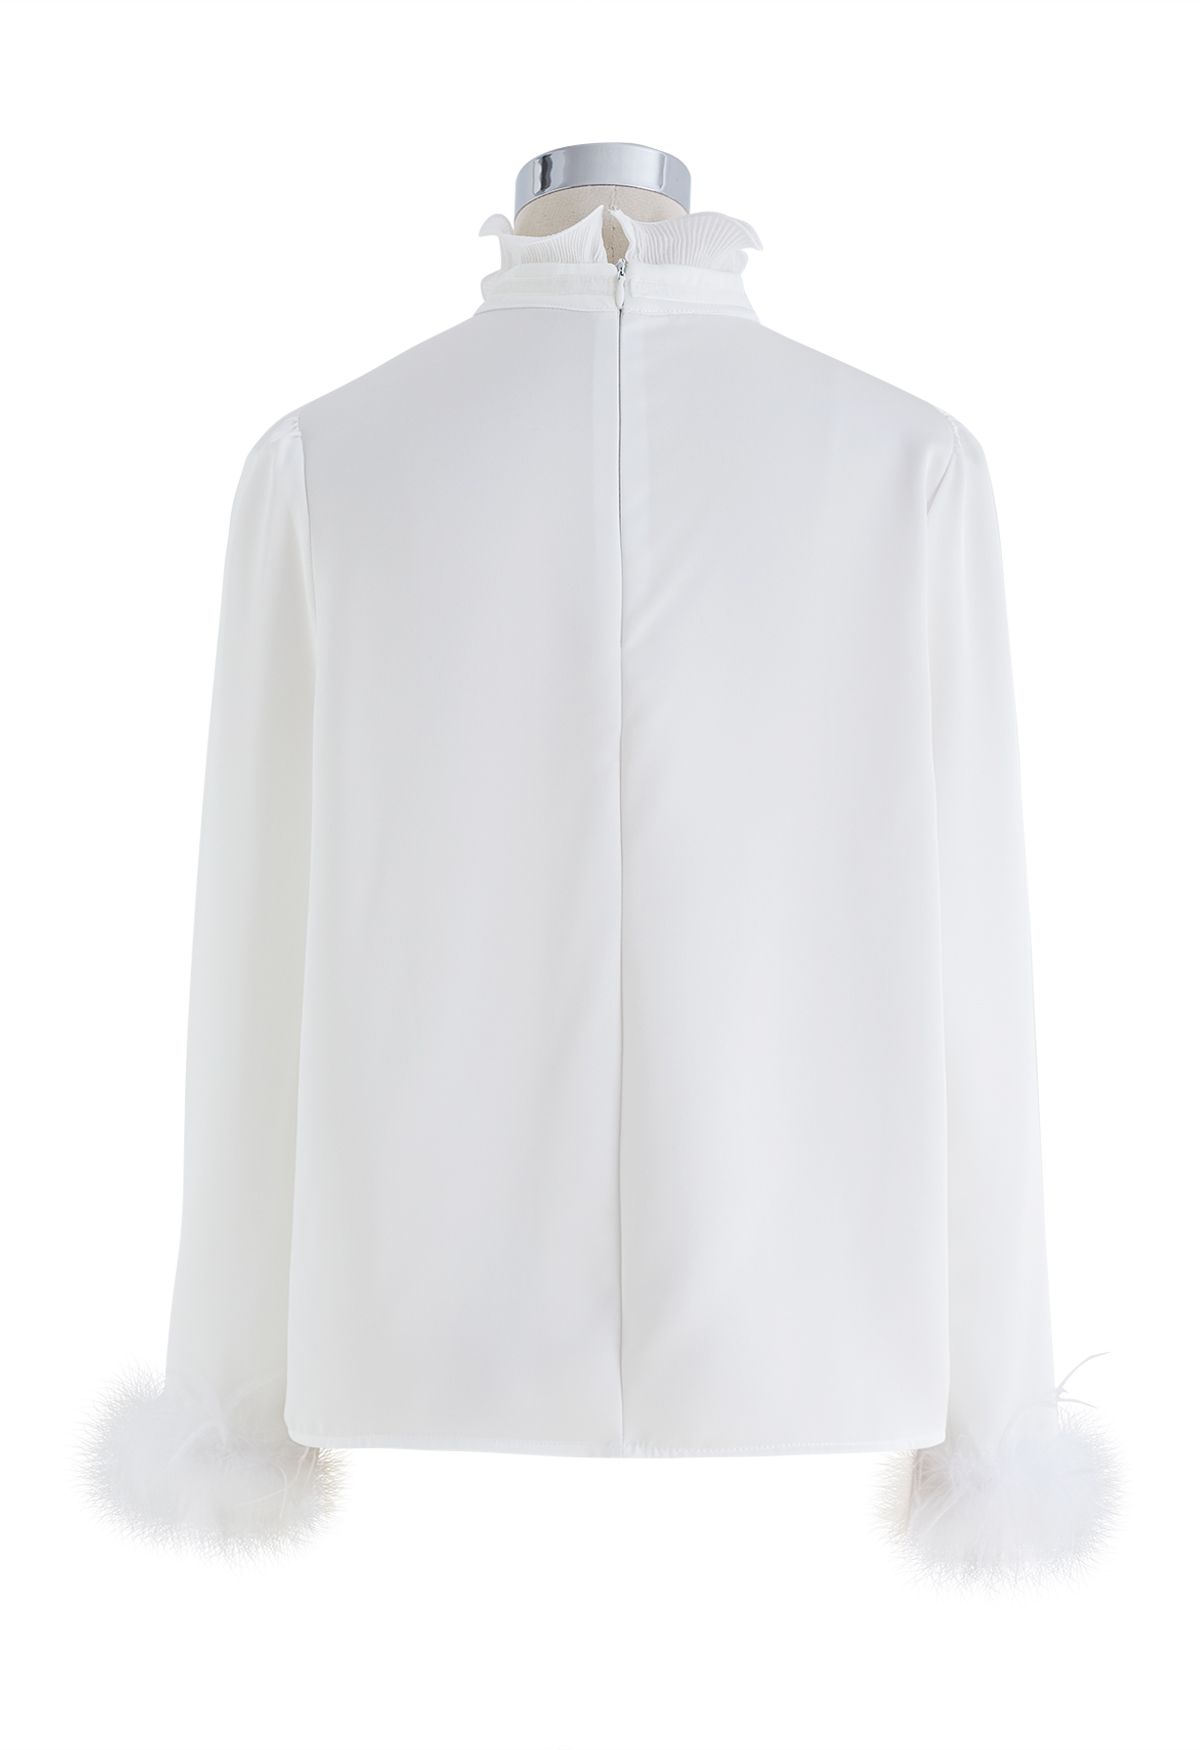 Ruffled Neckline Feathered Cuffs Satin Shirt in White